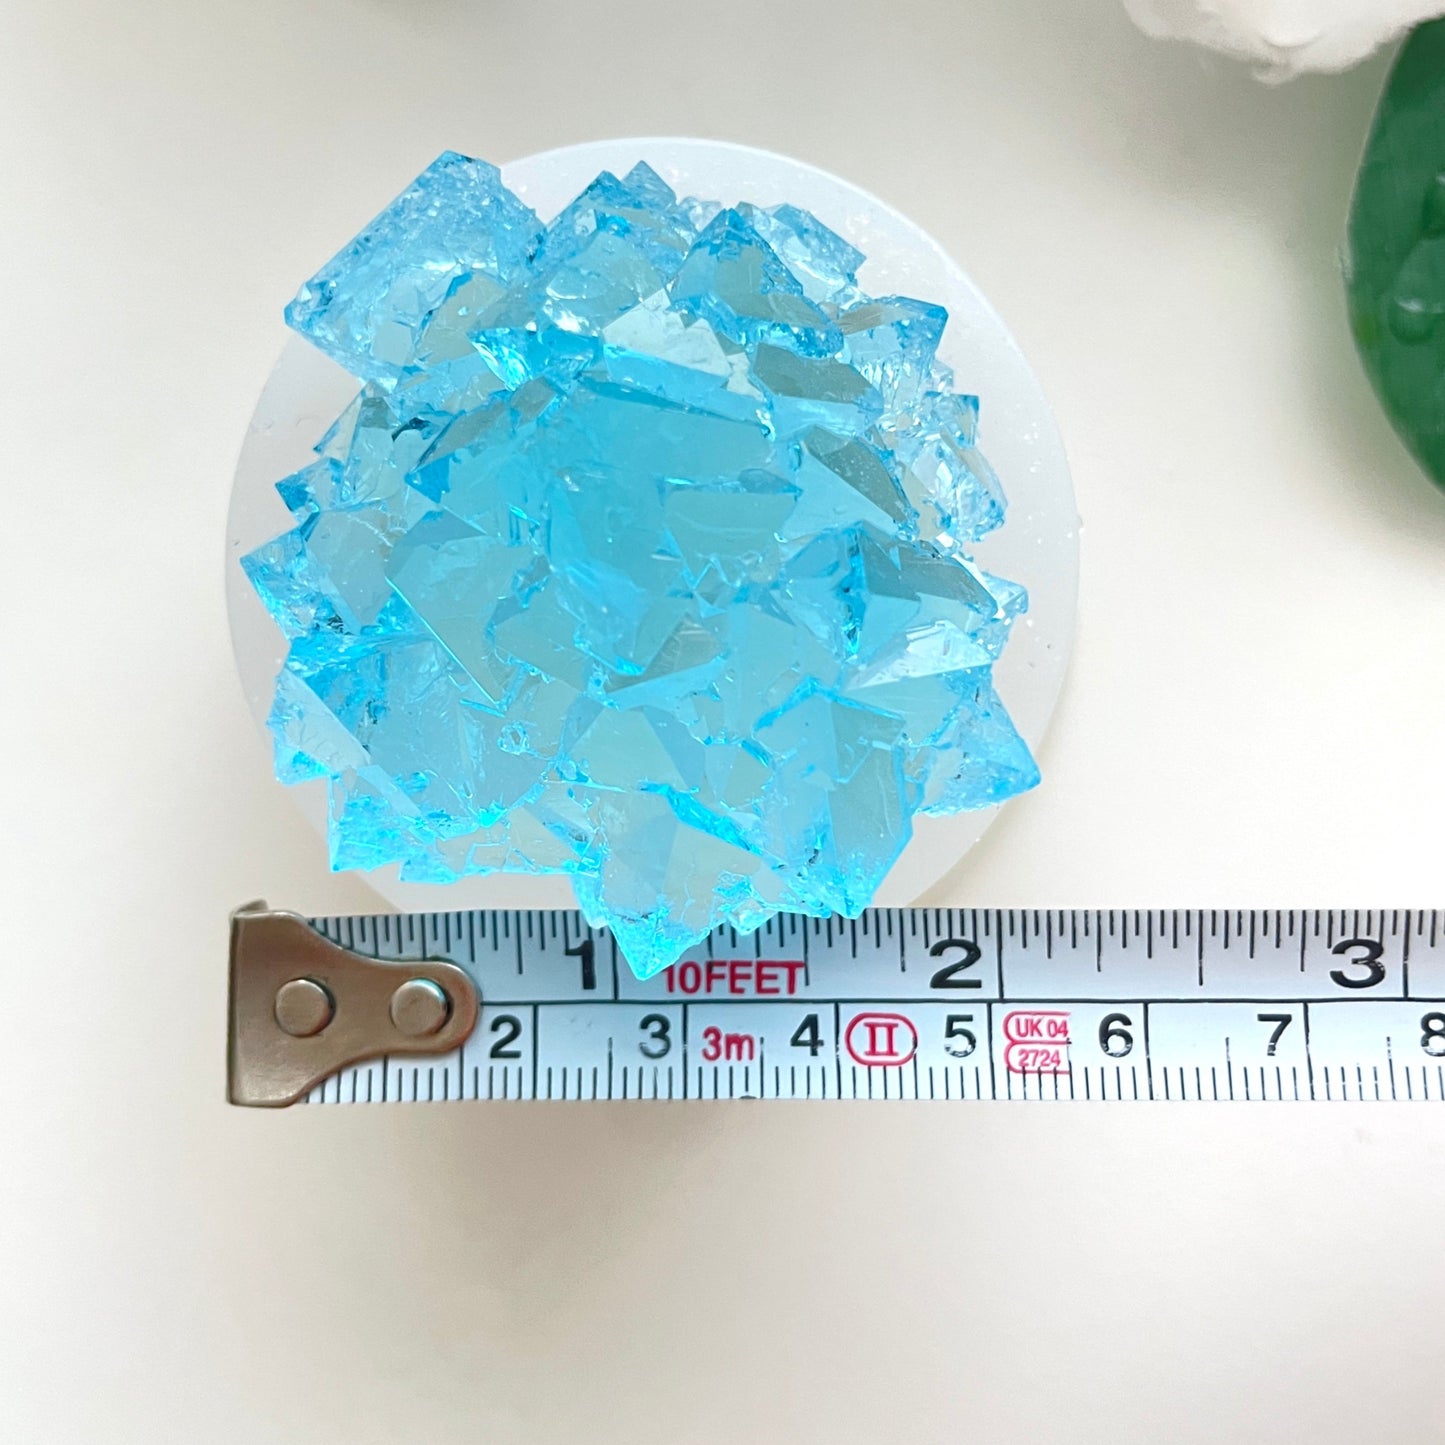 Kleine Schätze: Kleine Kristallcluster-Silikonform